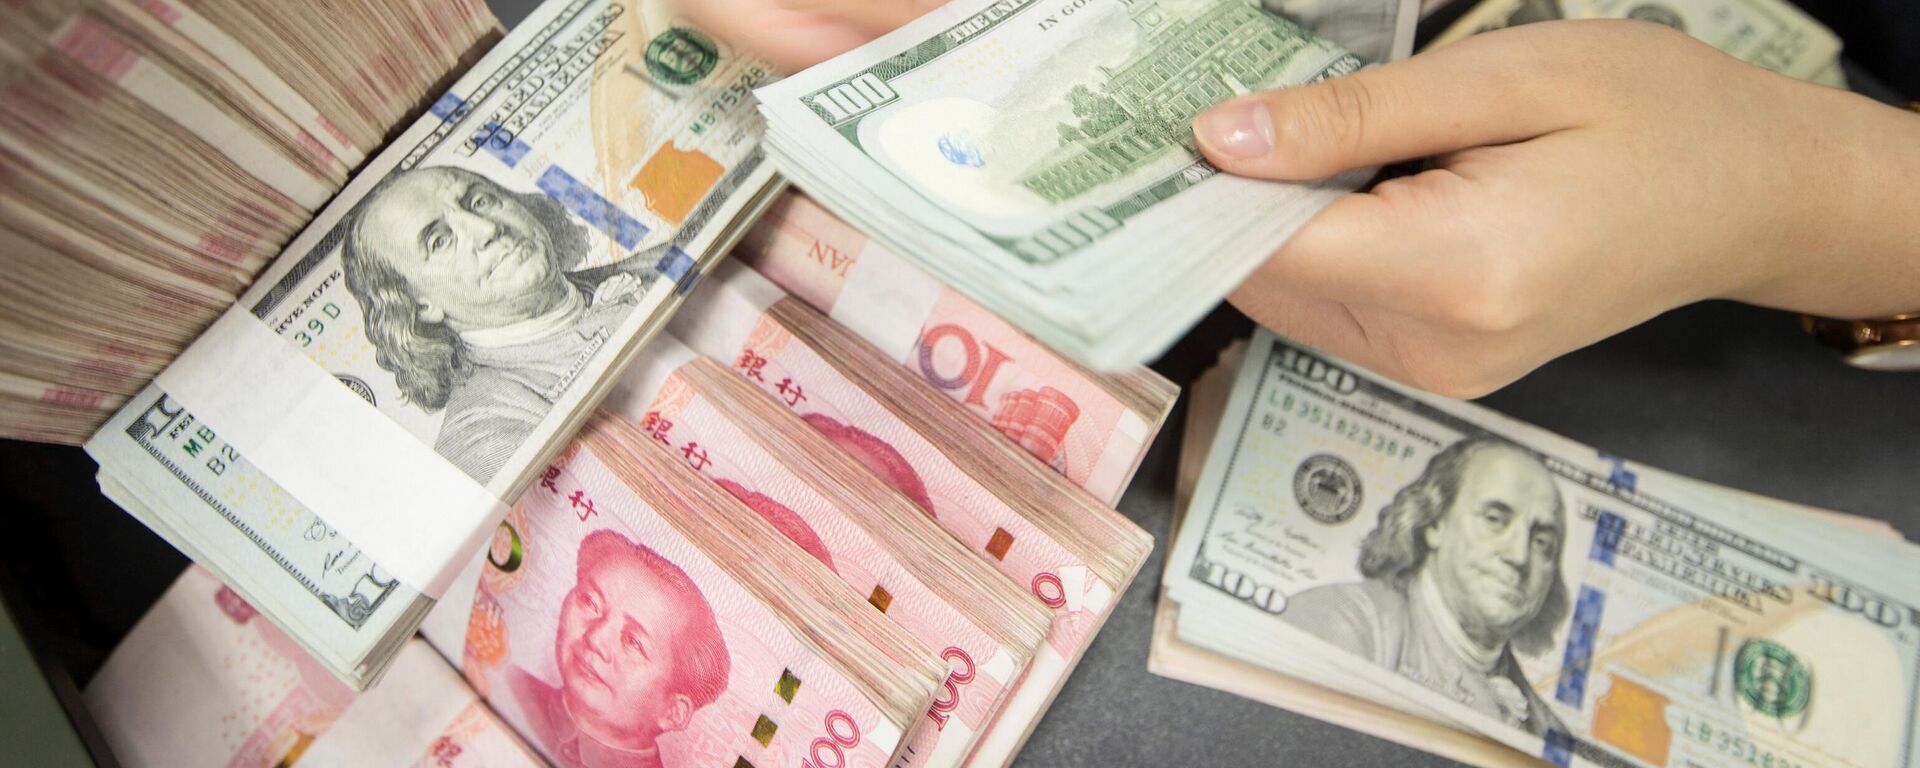 Сотрудник китайского банка пересчитывает банкноты в 100 юаней и купюры в долларах США - Sputnik Абхазия, 1920, 04.04.2022